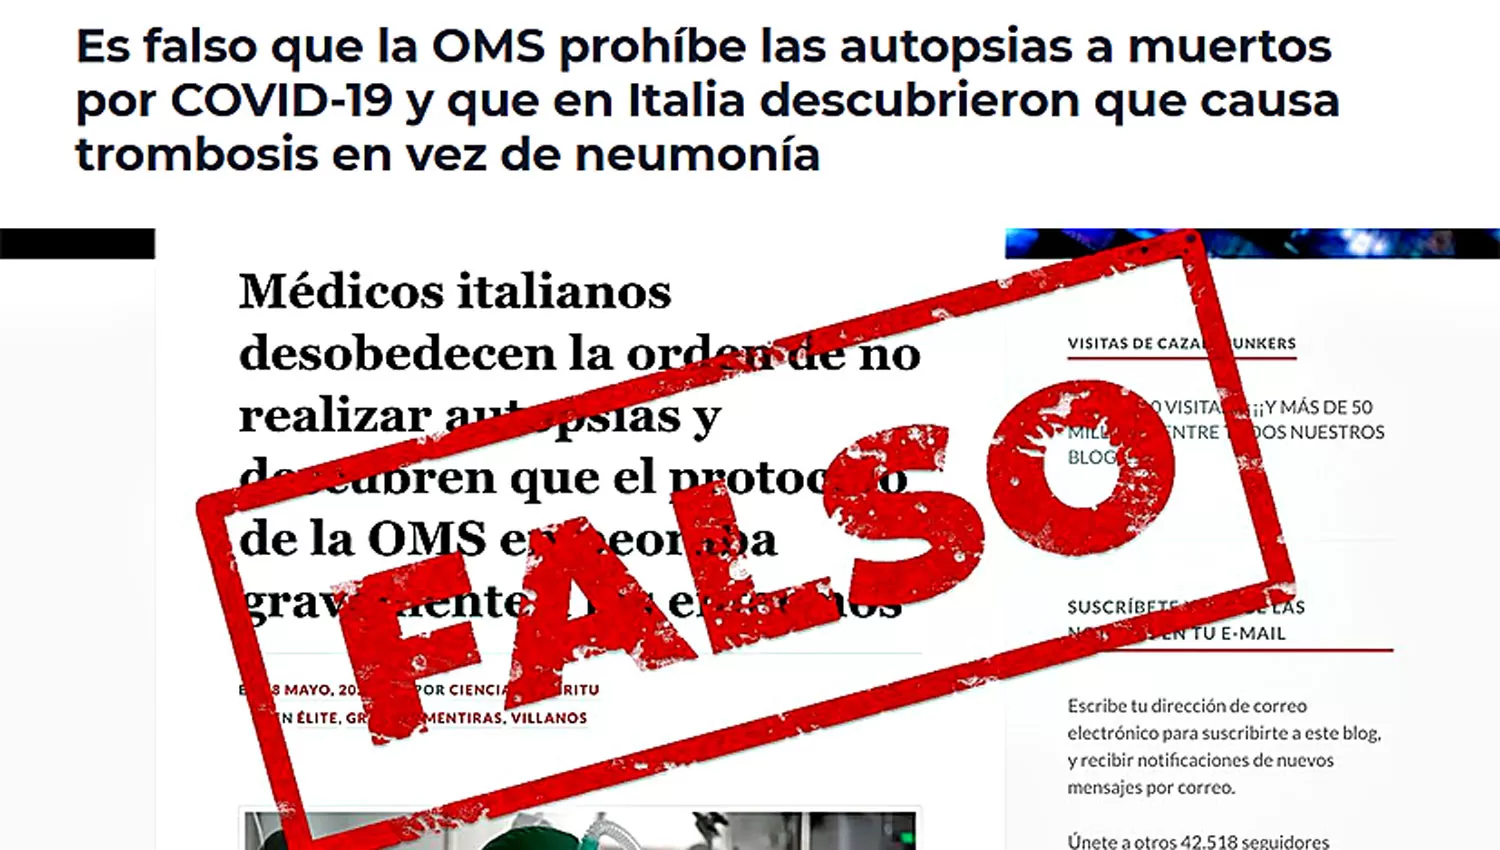 Es falso que la OMS prohíbe las autopsias a muertos por covid-19 y que en Italia dieron con que causa trombosis en vez de neumonía